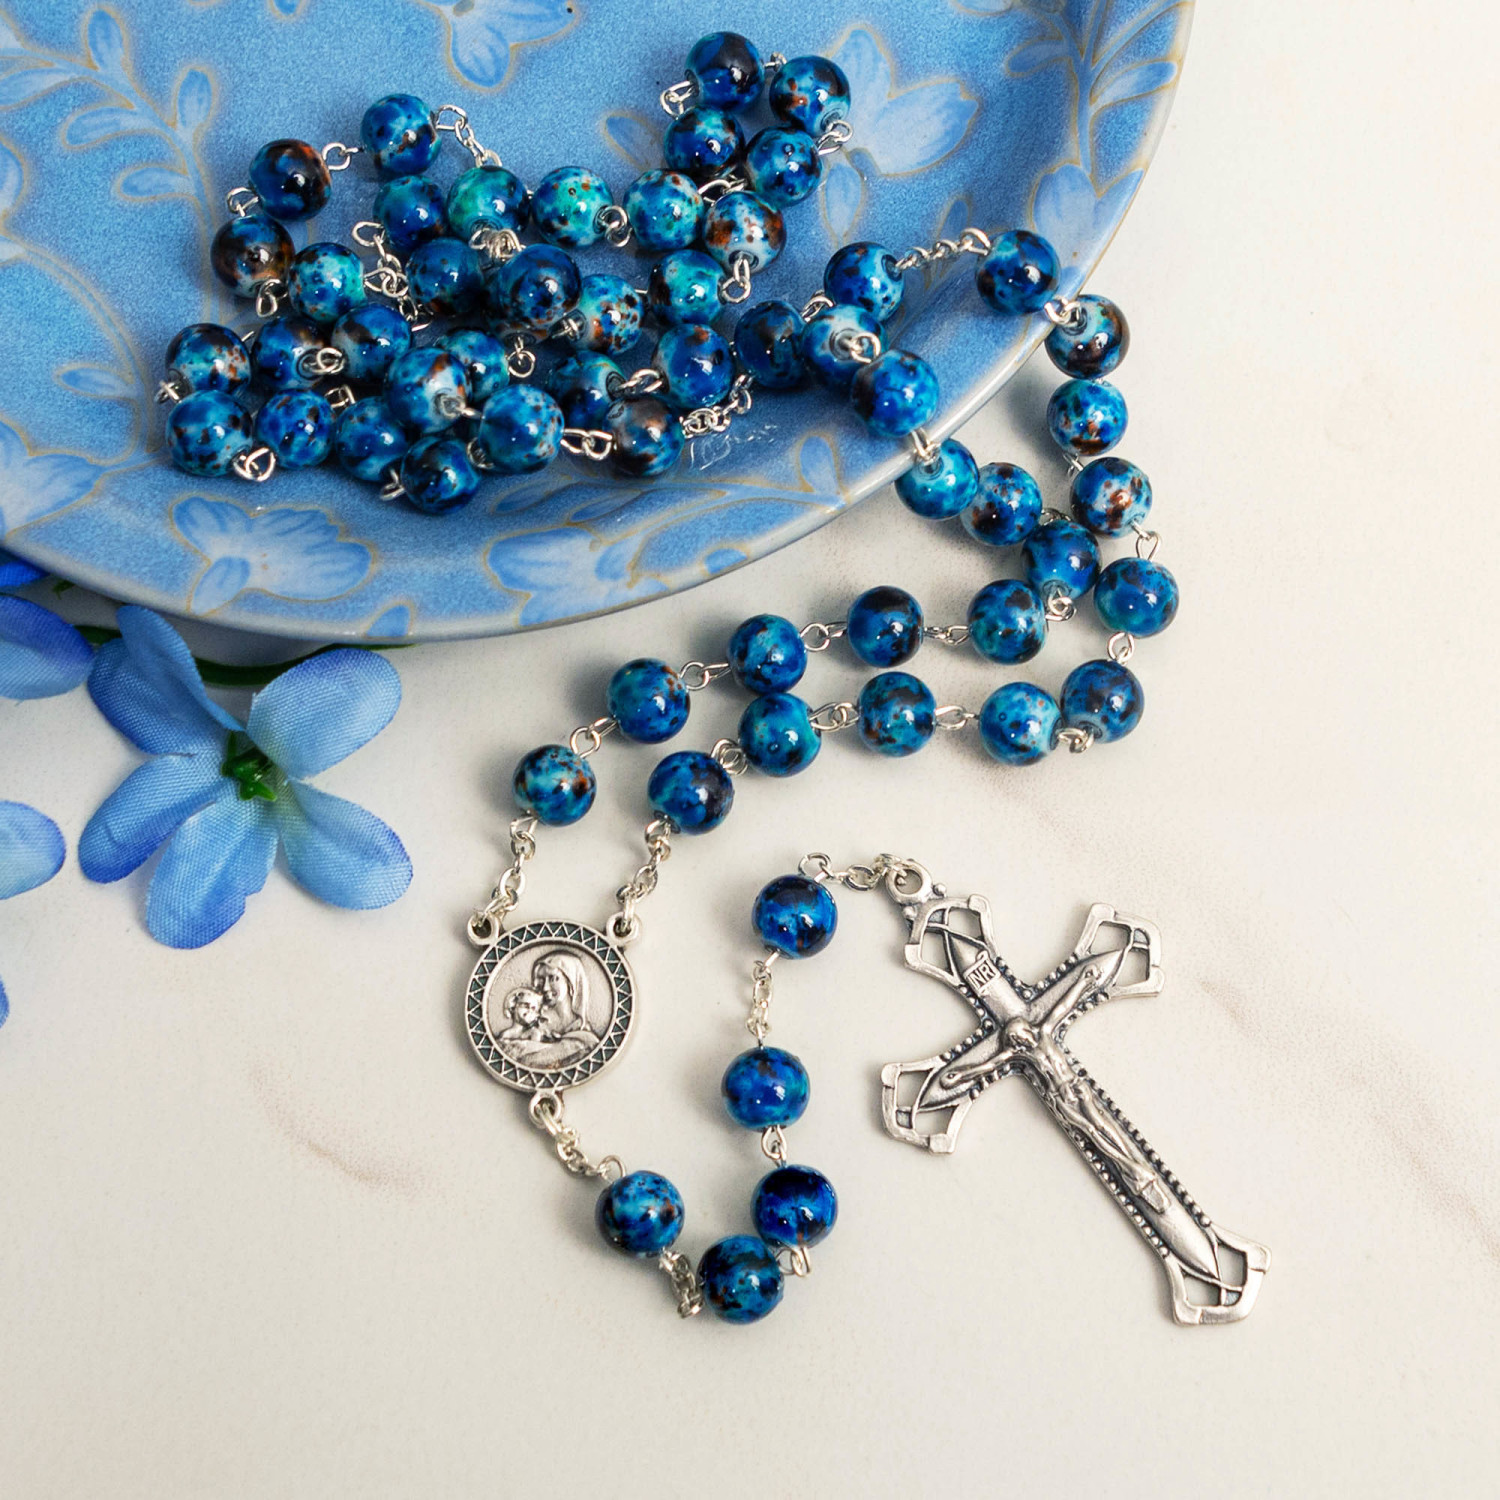 Marbled Blue Rosary | The Catholic Company®